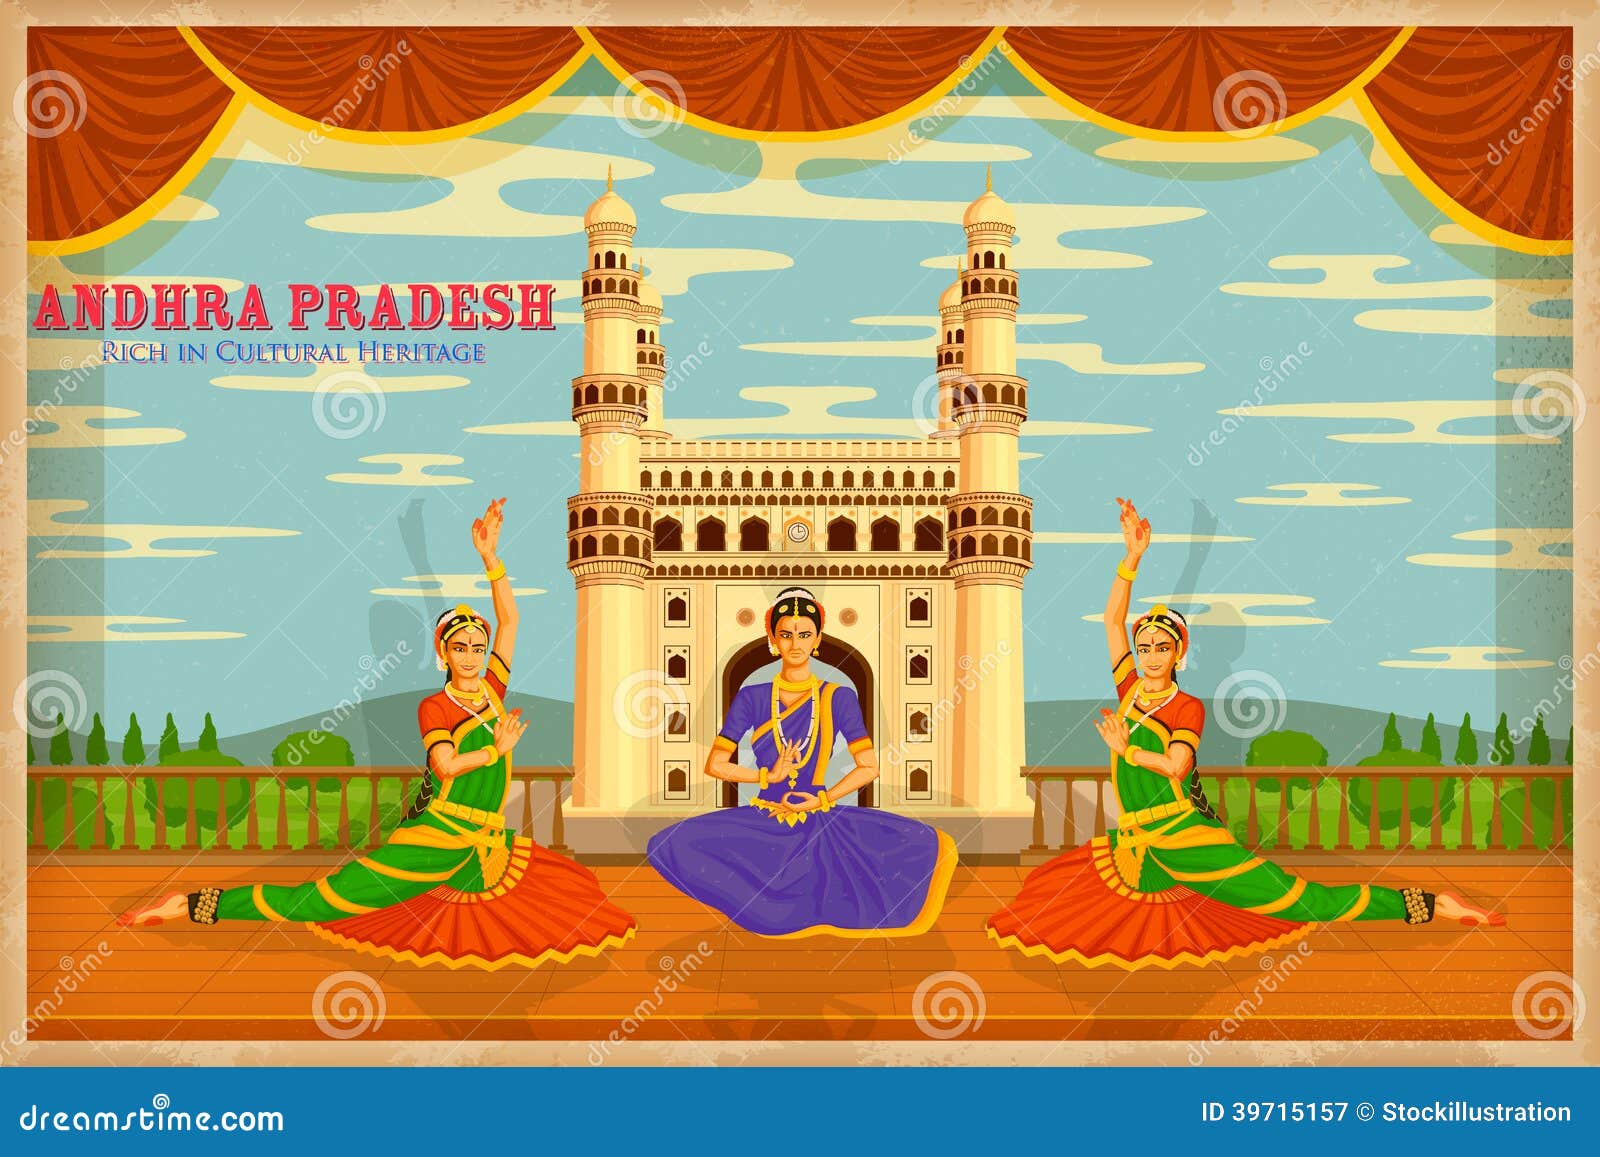 culture of andhra pradesh